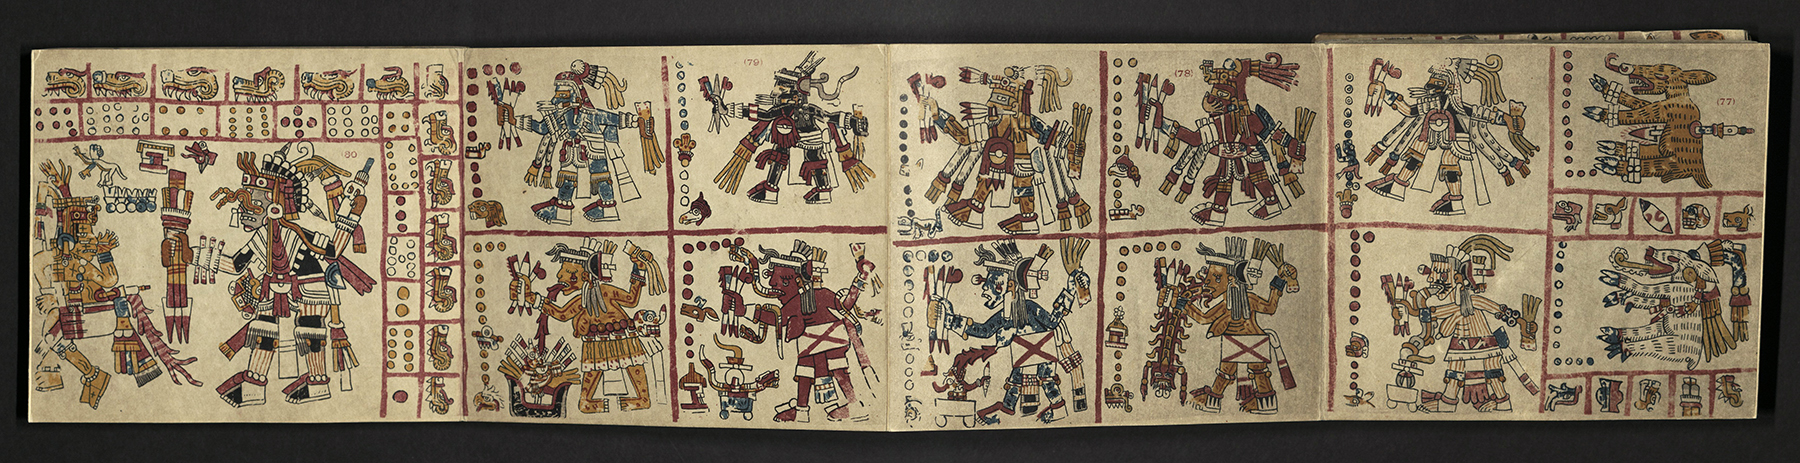 il manoscritto messicano